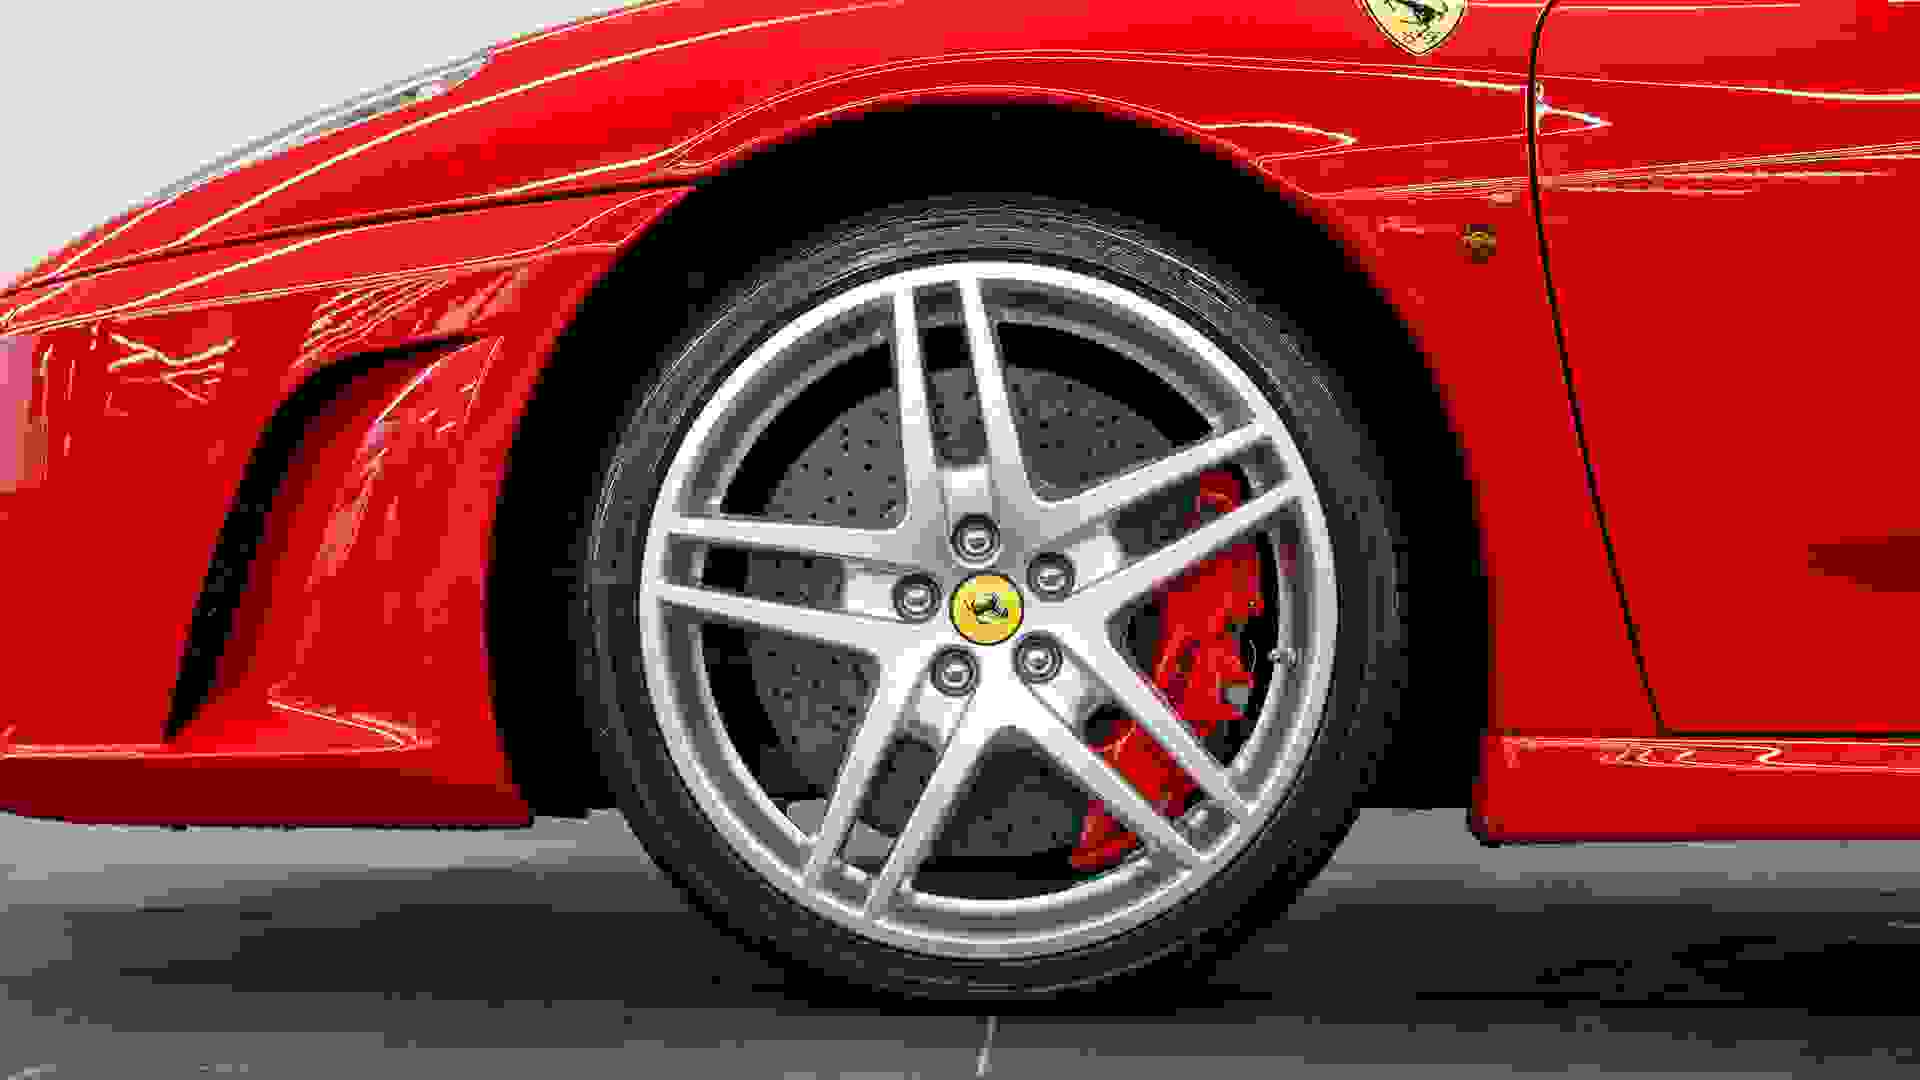 Ferrari F430 Photo 99dba594-6794-40c7-9355-bf763d4e4819.jpg